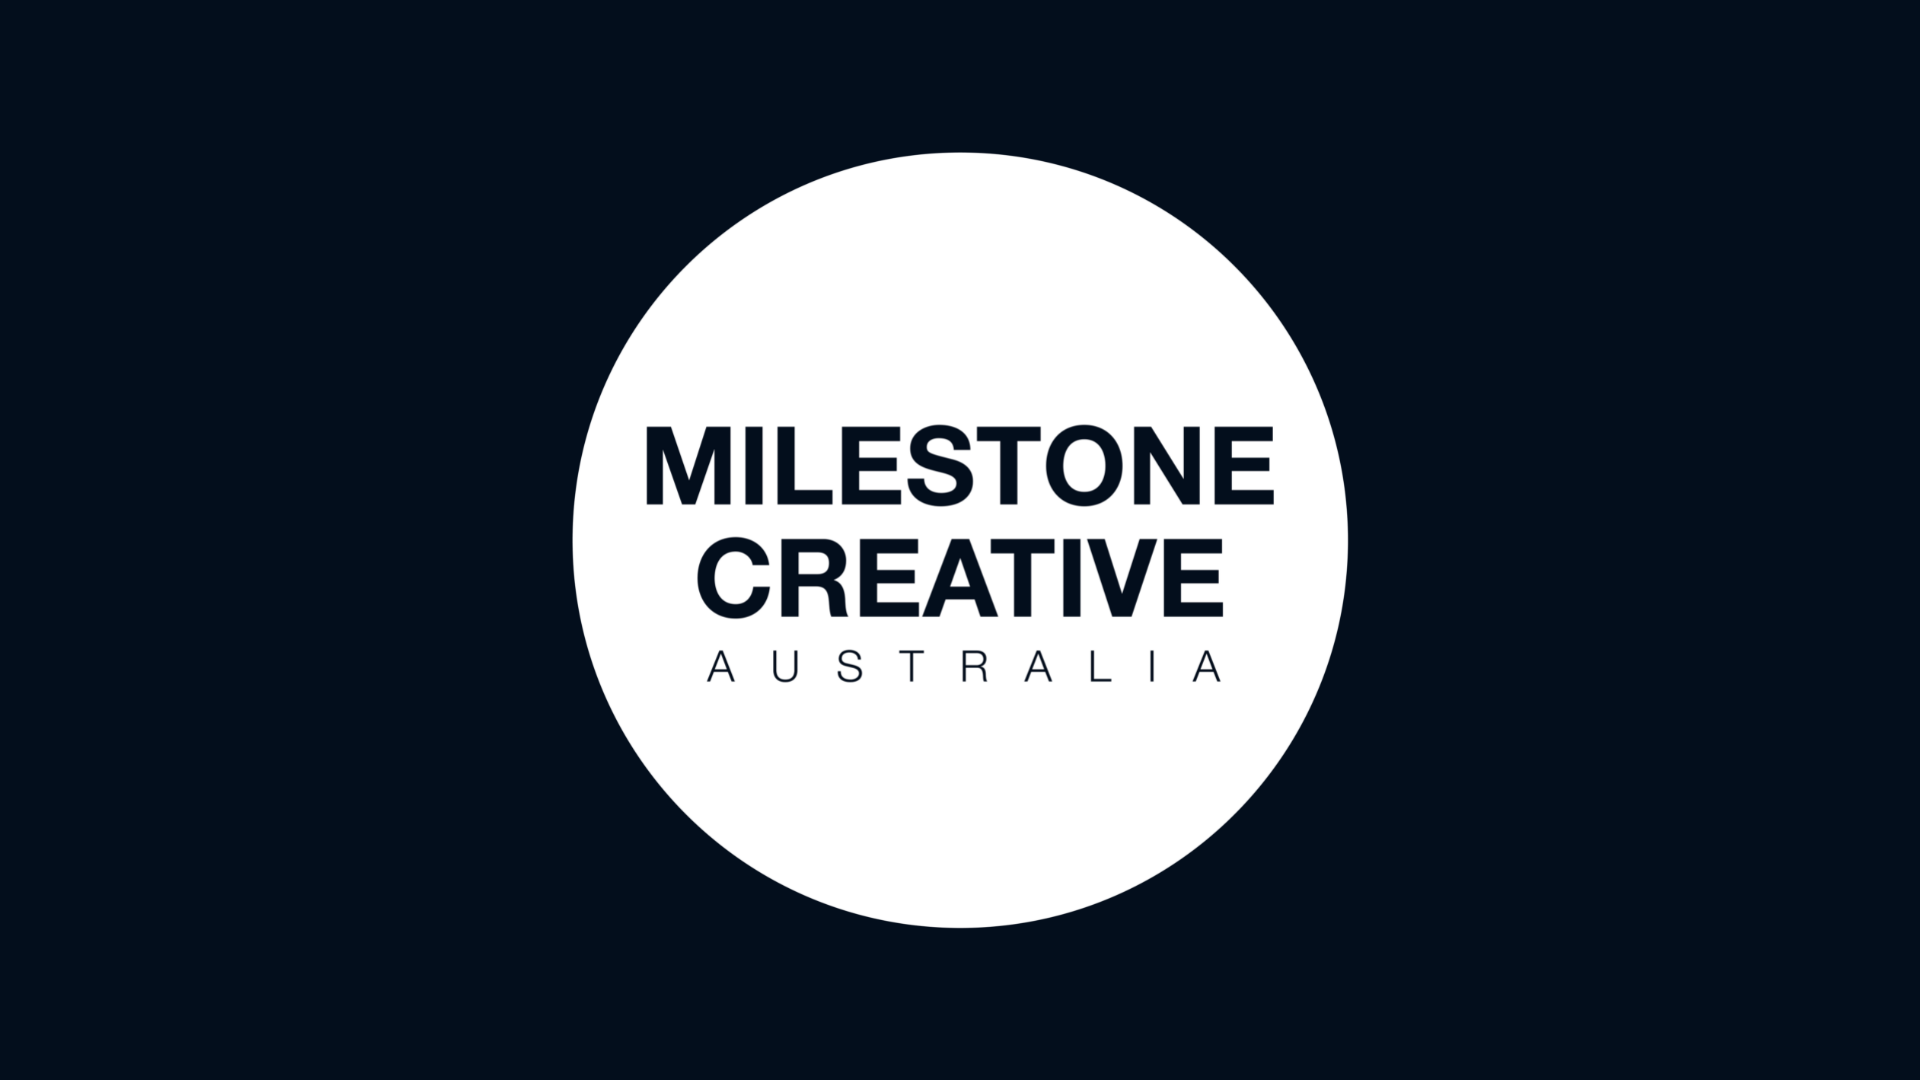 (c) Milestonecreative.com.au